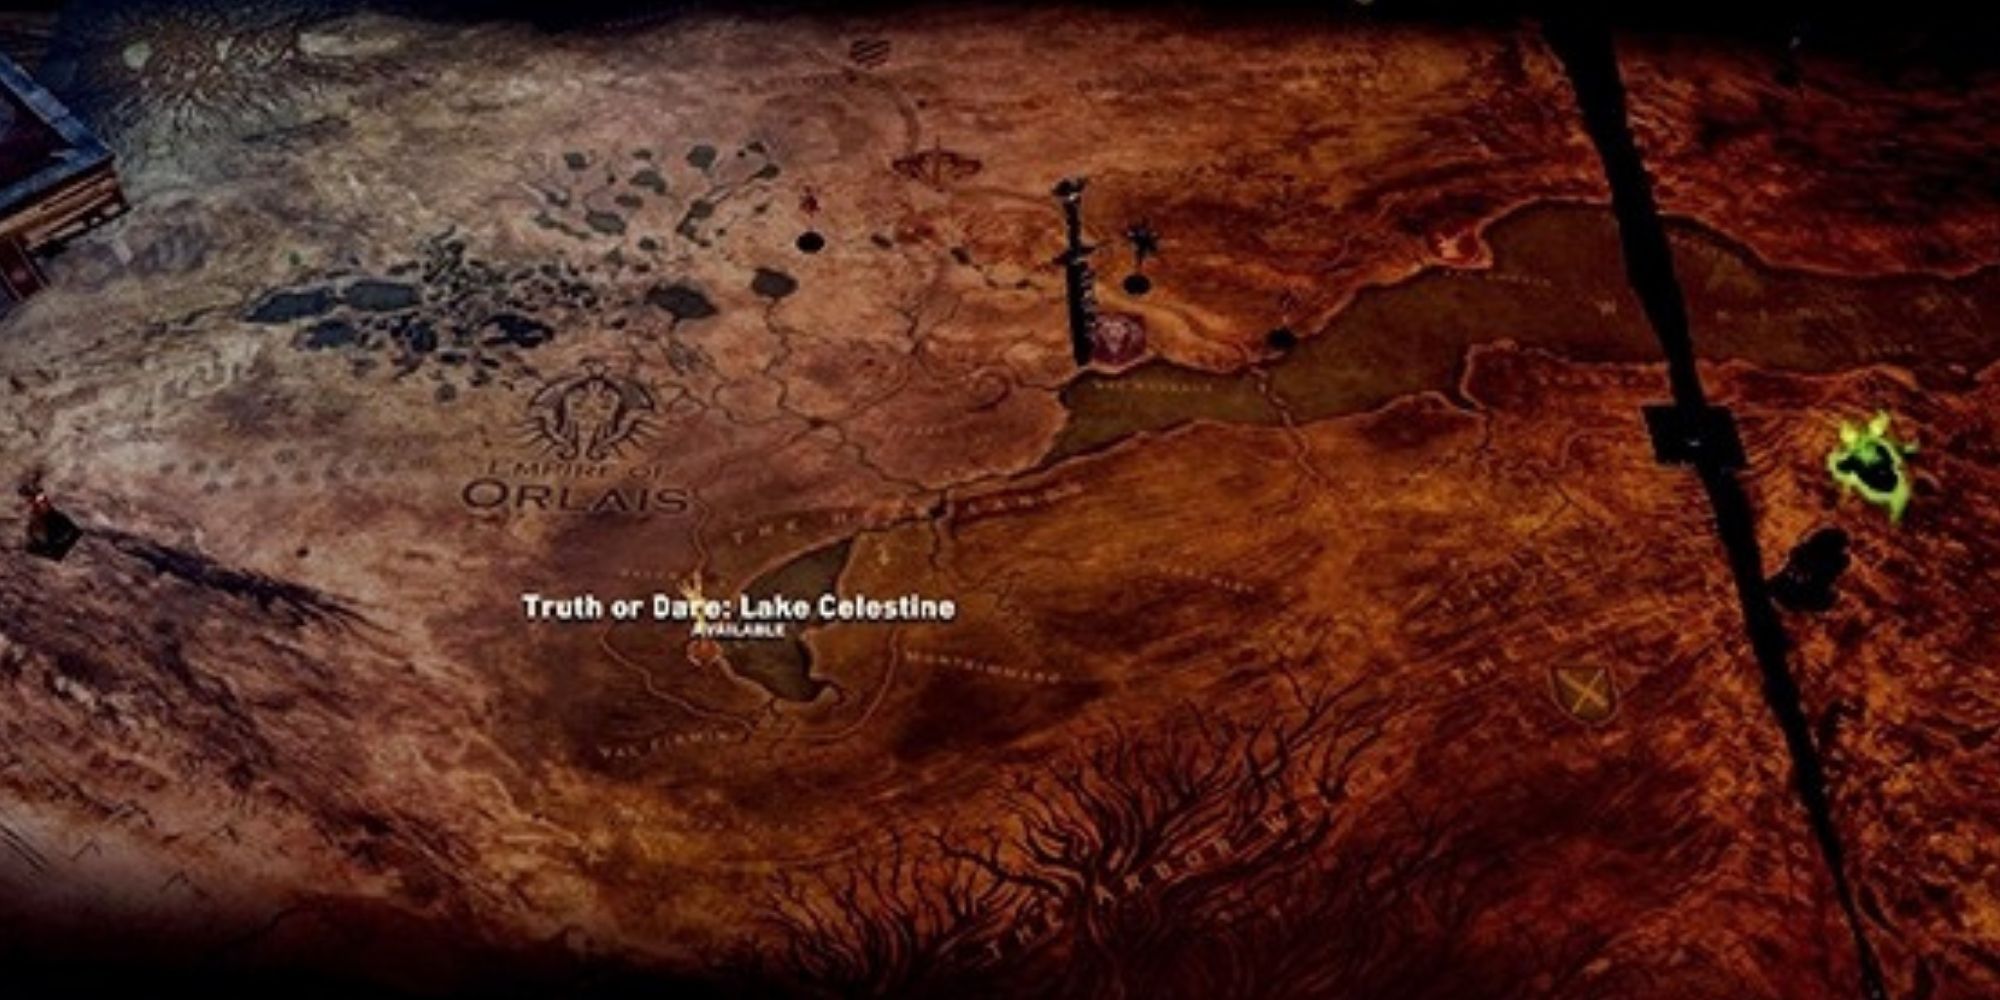 Ratna tablica Dragon Age Inkvizicije s istaknutom operacijom Istina ili Dare Lake Celestine